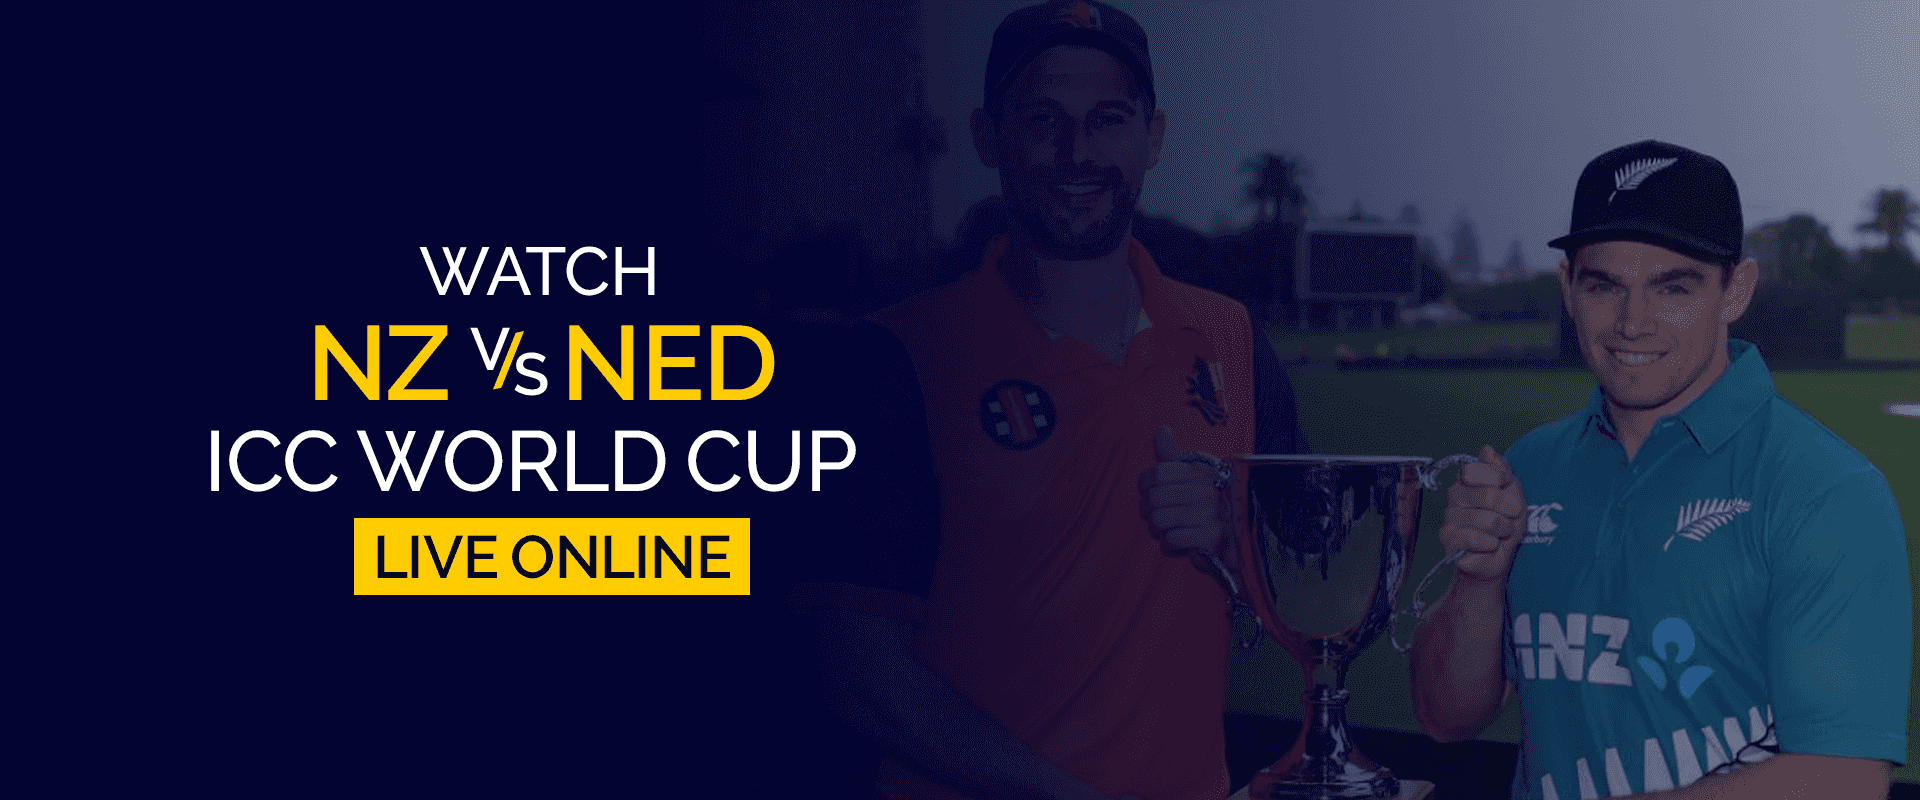 Bekijk NZ vs NED ICC World Cup live online